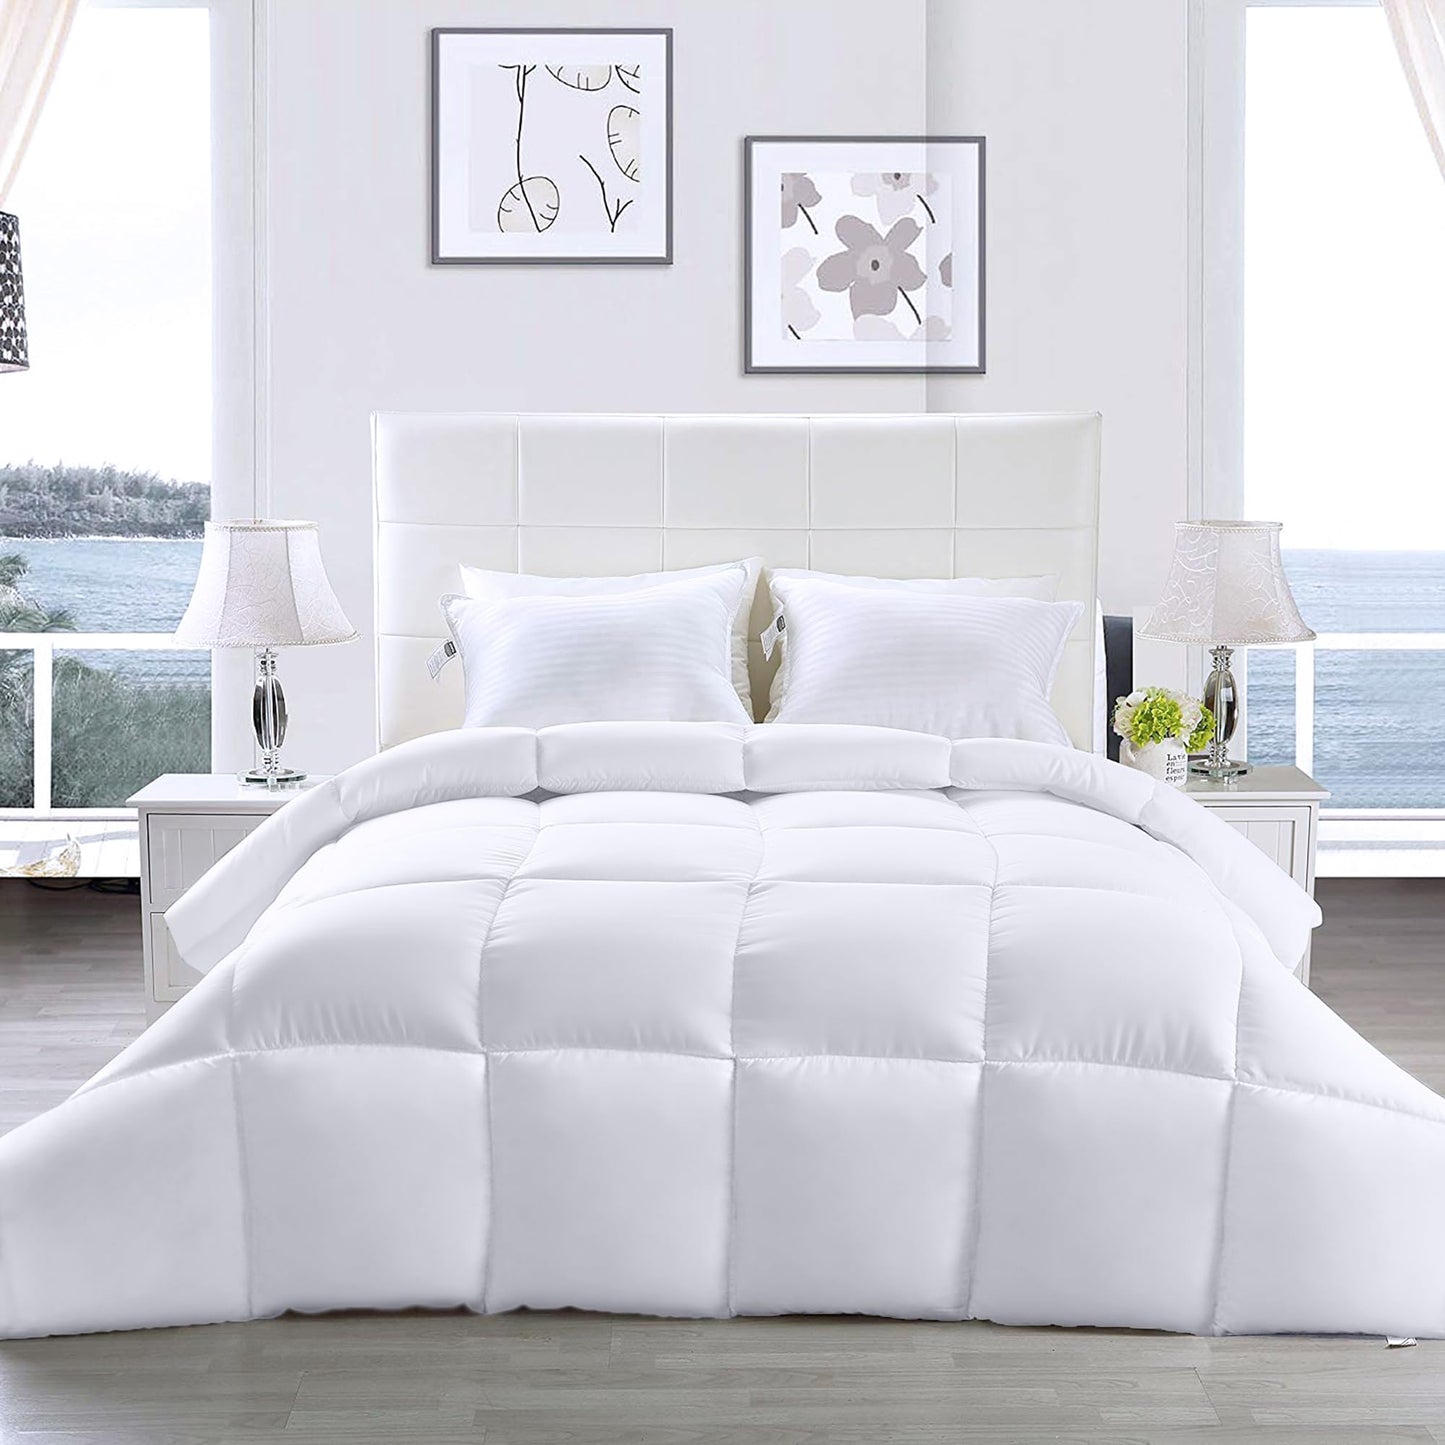 Utopia Bedding Comforter - All Season California King Comforter - White Cal King Comforter - Plush Siliconized Fiberfill - Box Stitched